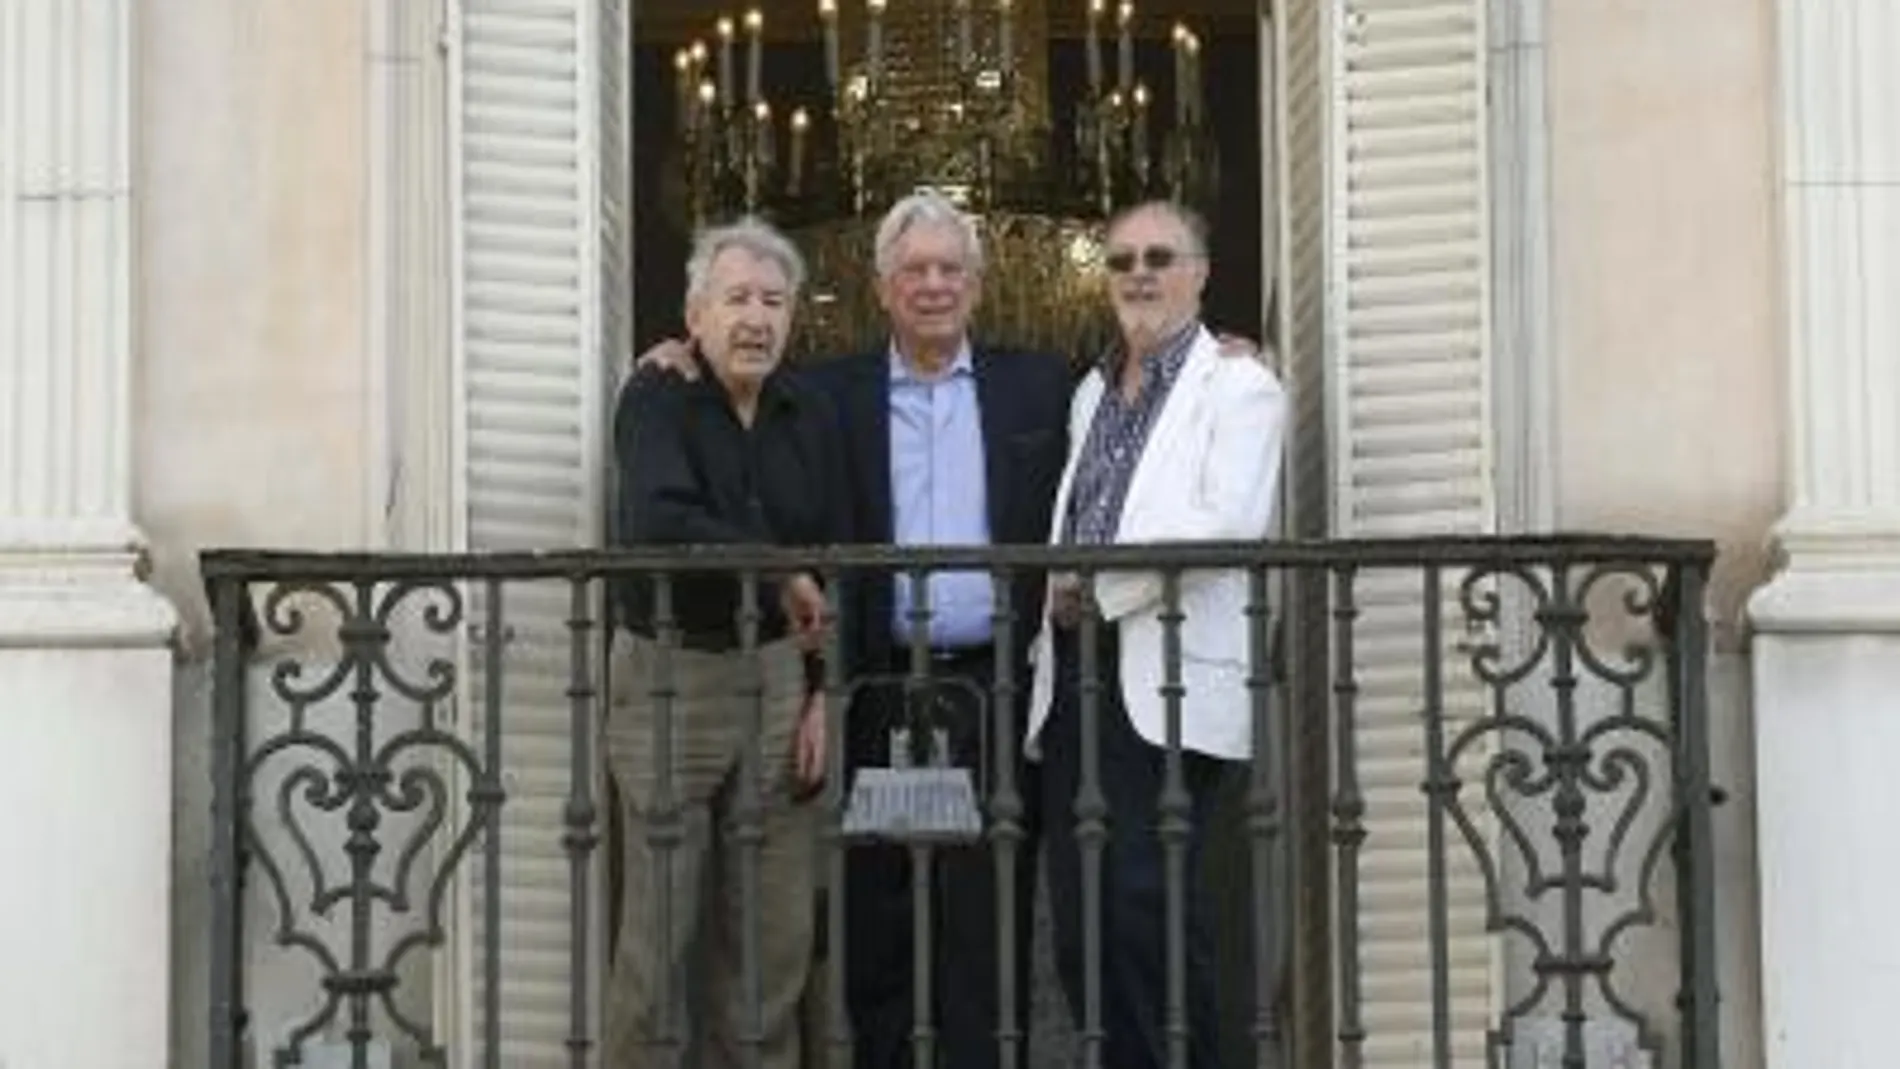 El escritor peruano Mario Vargas Llosa , posa junto al actor, José Sacristán, y el director teatral, Gustavo Tambacio, en uno de los balcones del Teatro Español, donde han presentado la obra "El loco de los balcones"